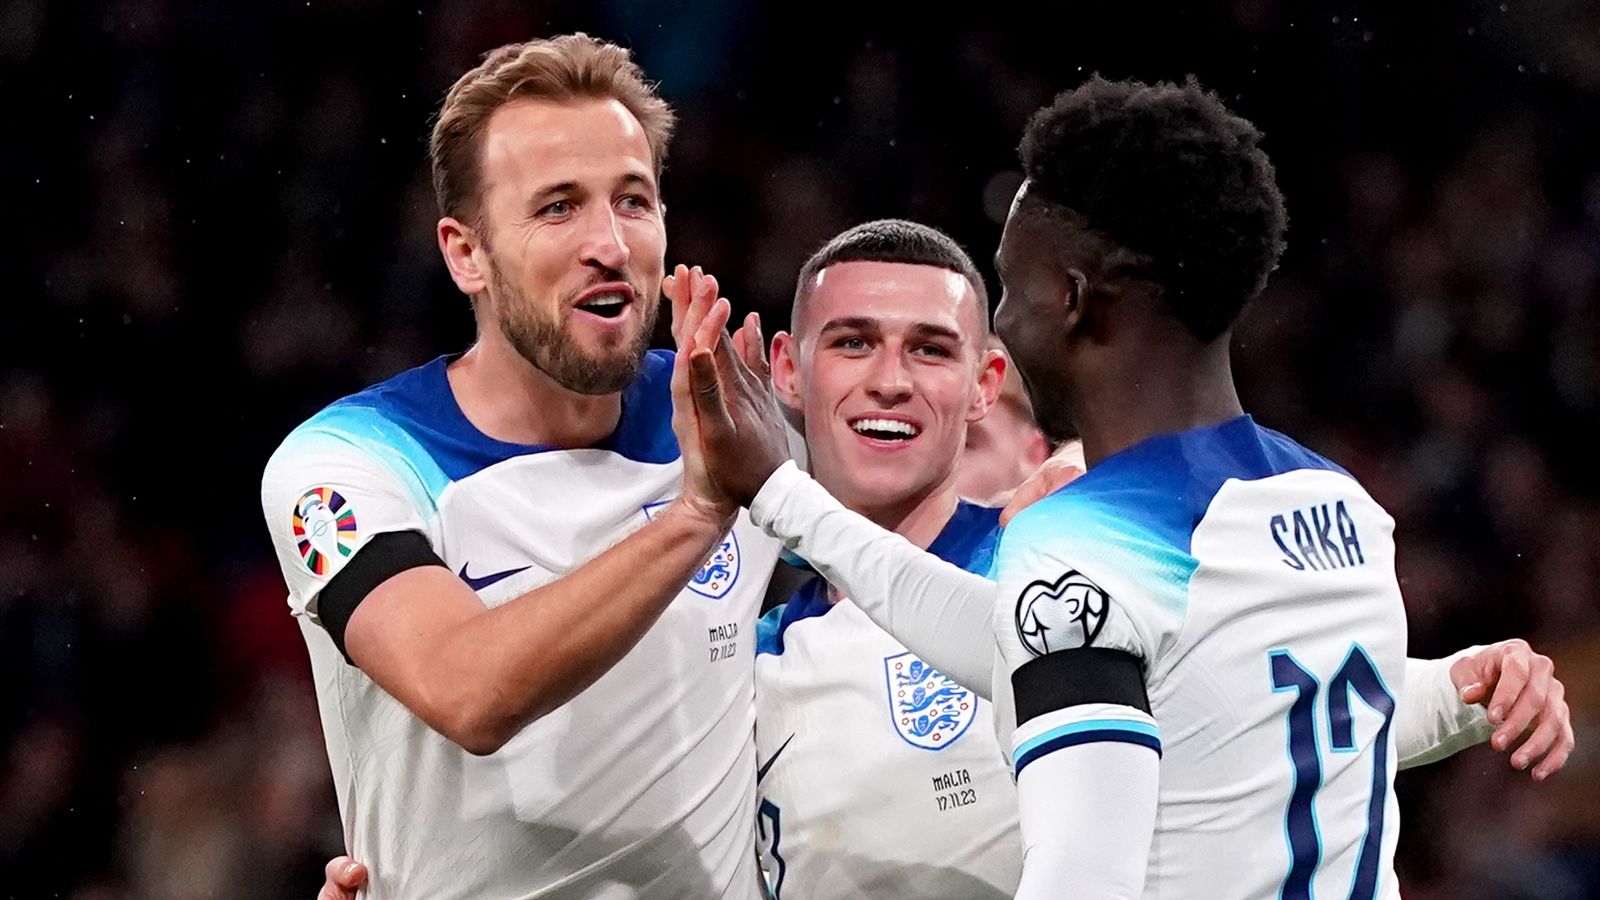 ความทะเยอทะยานของอังกฤษคือการเป็นอันดับ 1 ของโลก Gareth Southgate กล่าวก่อนการเดินทางมาซิโดเนียเหนือ |  ข่าวฟุตบอล